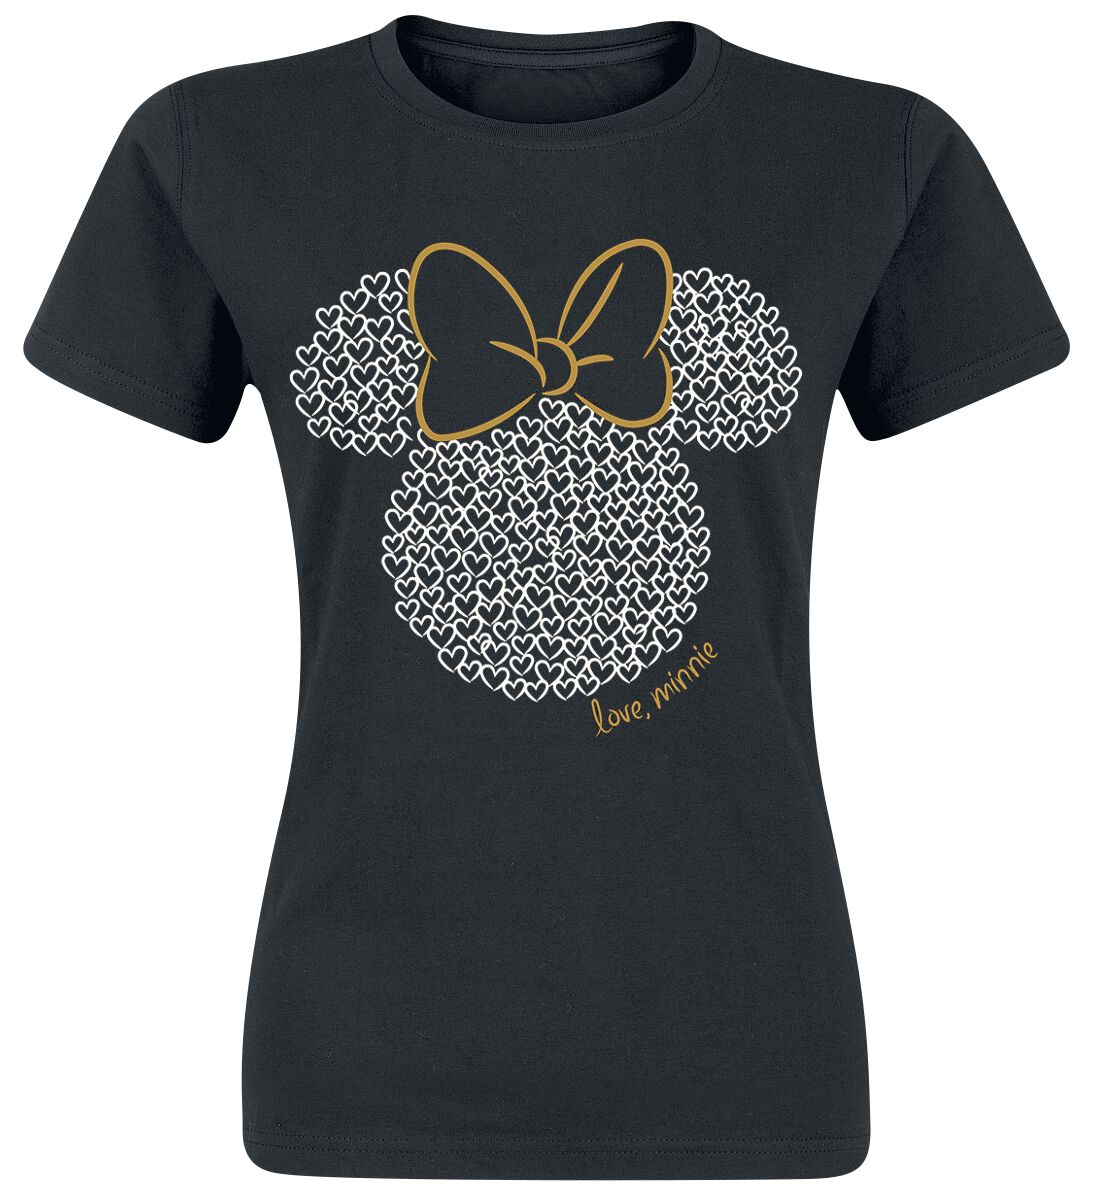 T-Shirt Manches courtes Disney de Minnie Mouse - Love - M à L - pour Femme - noir